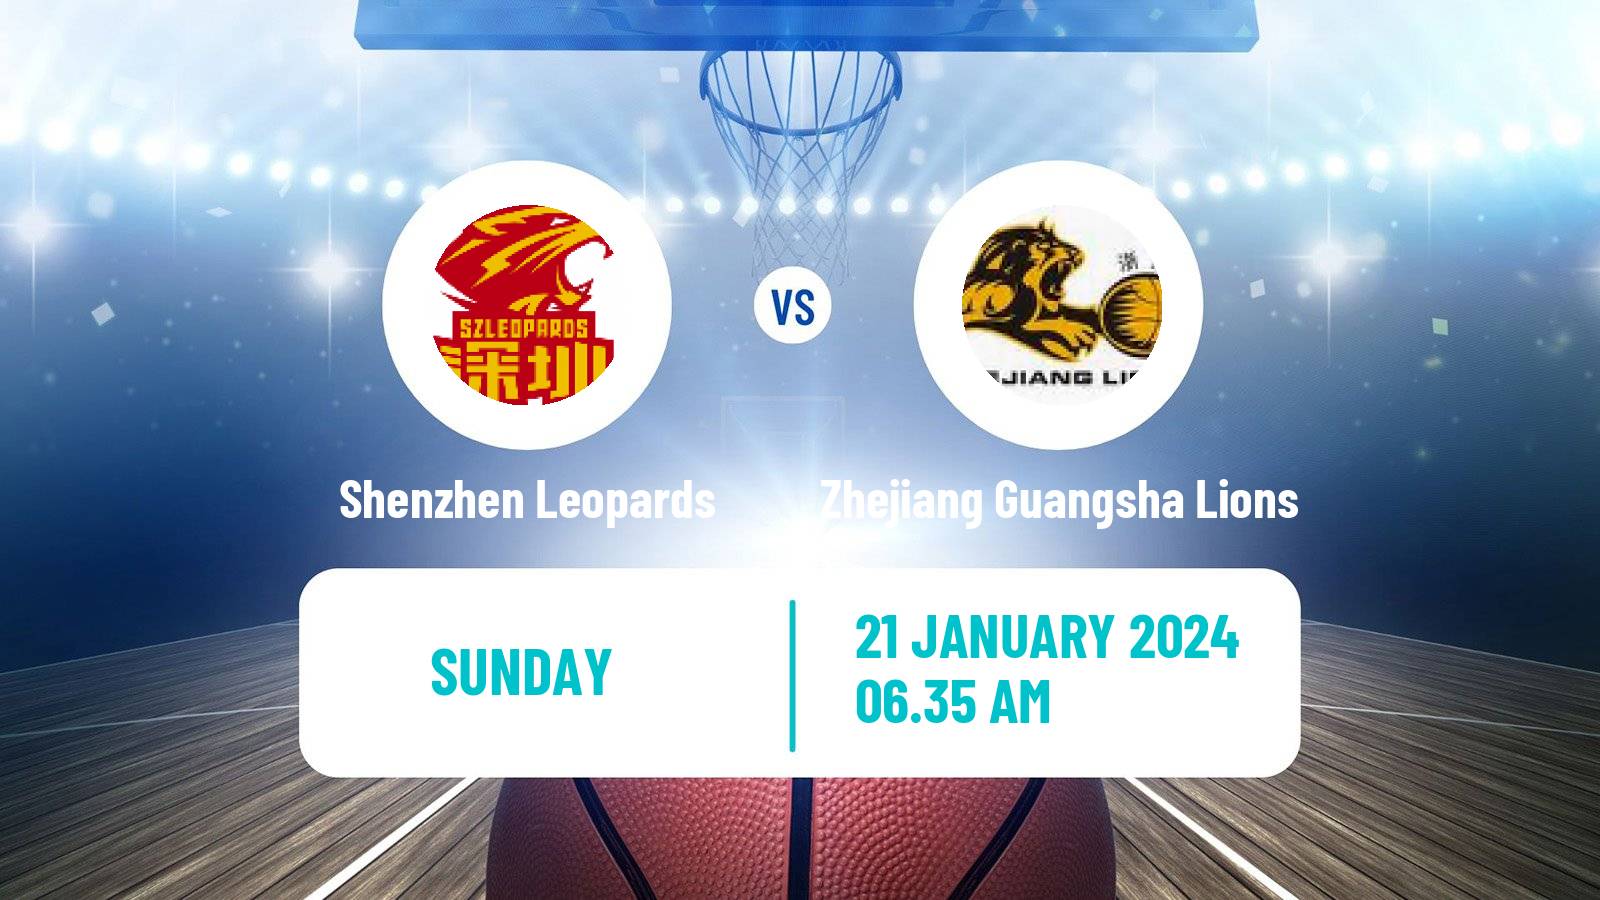 Basketball CBA Shenzhen Leopards - Zhejiang Guangsha Lions